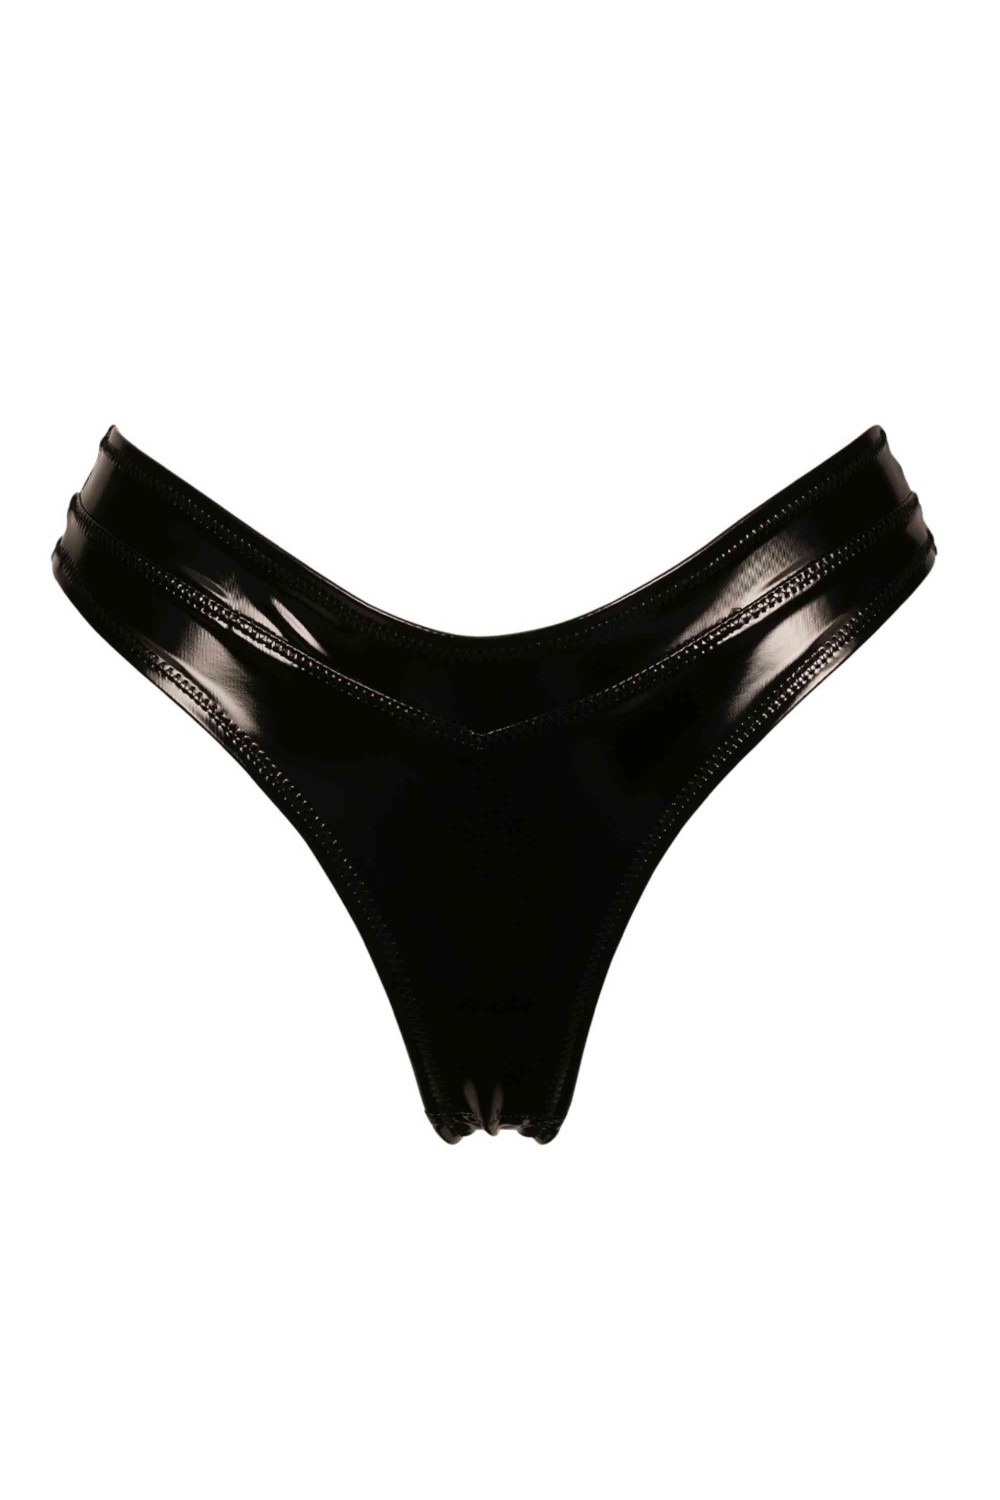 Women's Briefs Wet Look PVC High Cut Underwear Sexy Lingerie Knickers  Underpants